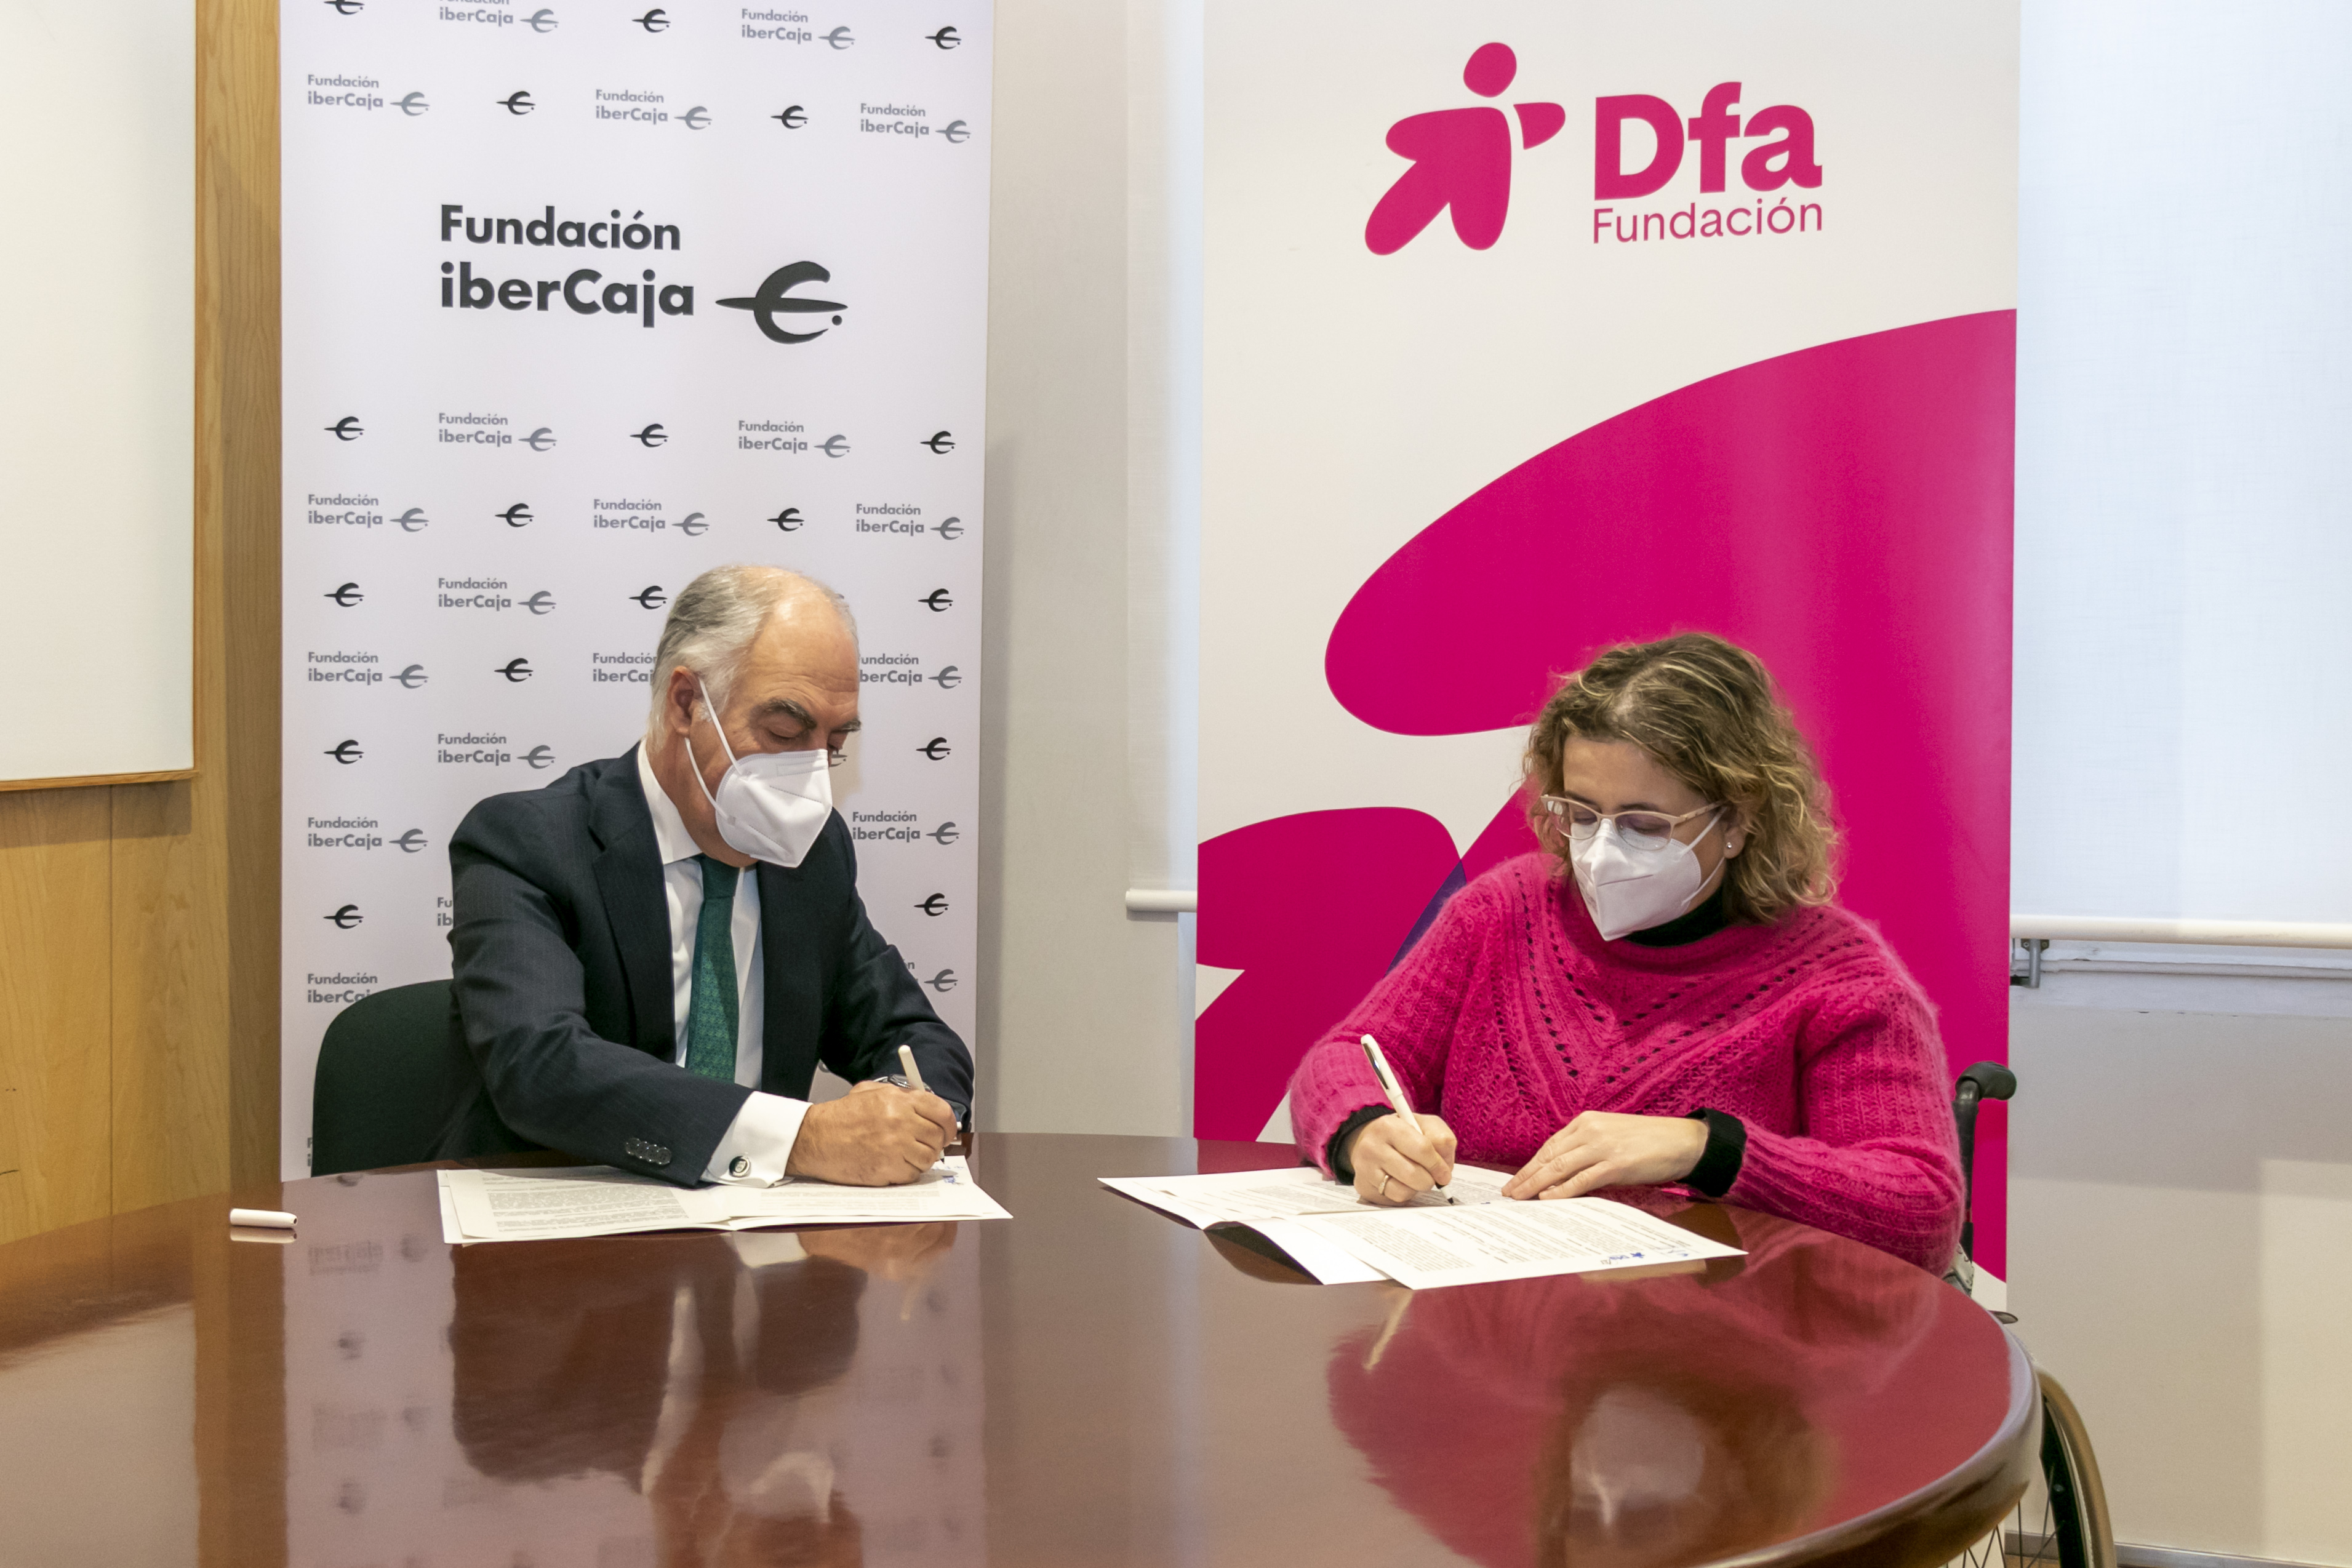 La presidenta de Fundación Dfa y el presidente de Fundación Ibercaja firman su convenio de colaboración en una mesa